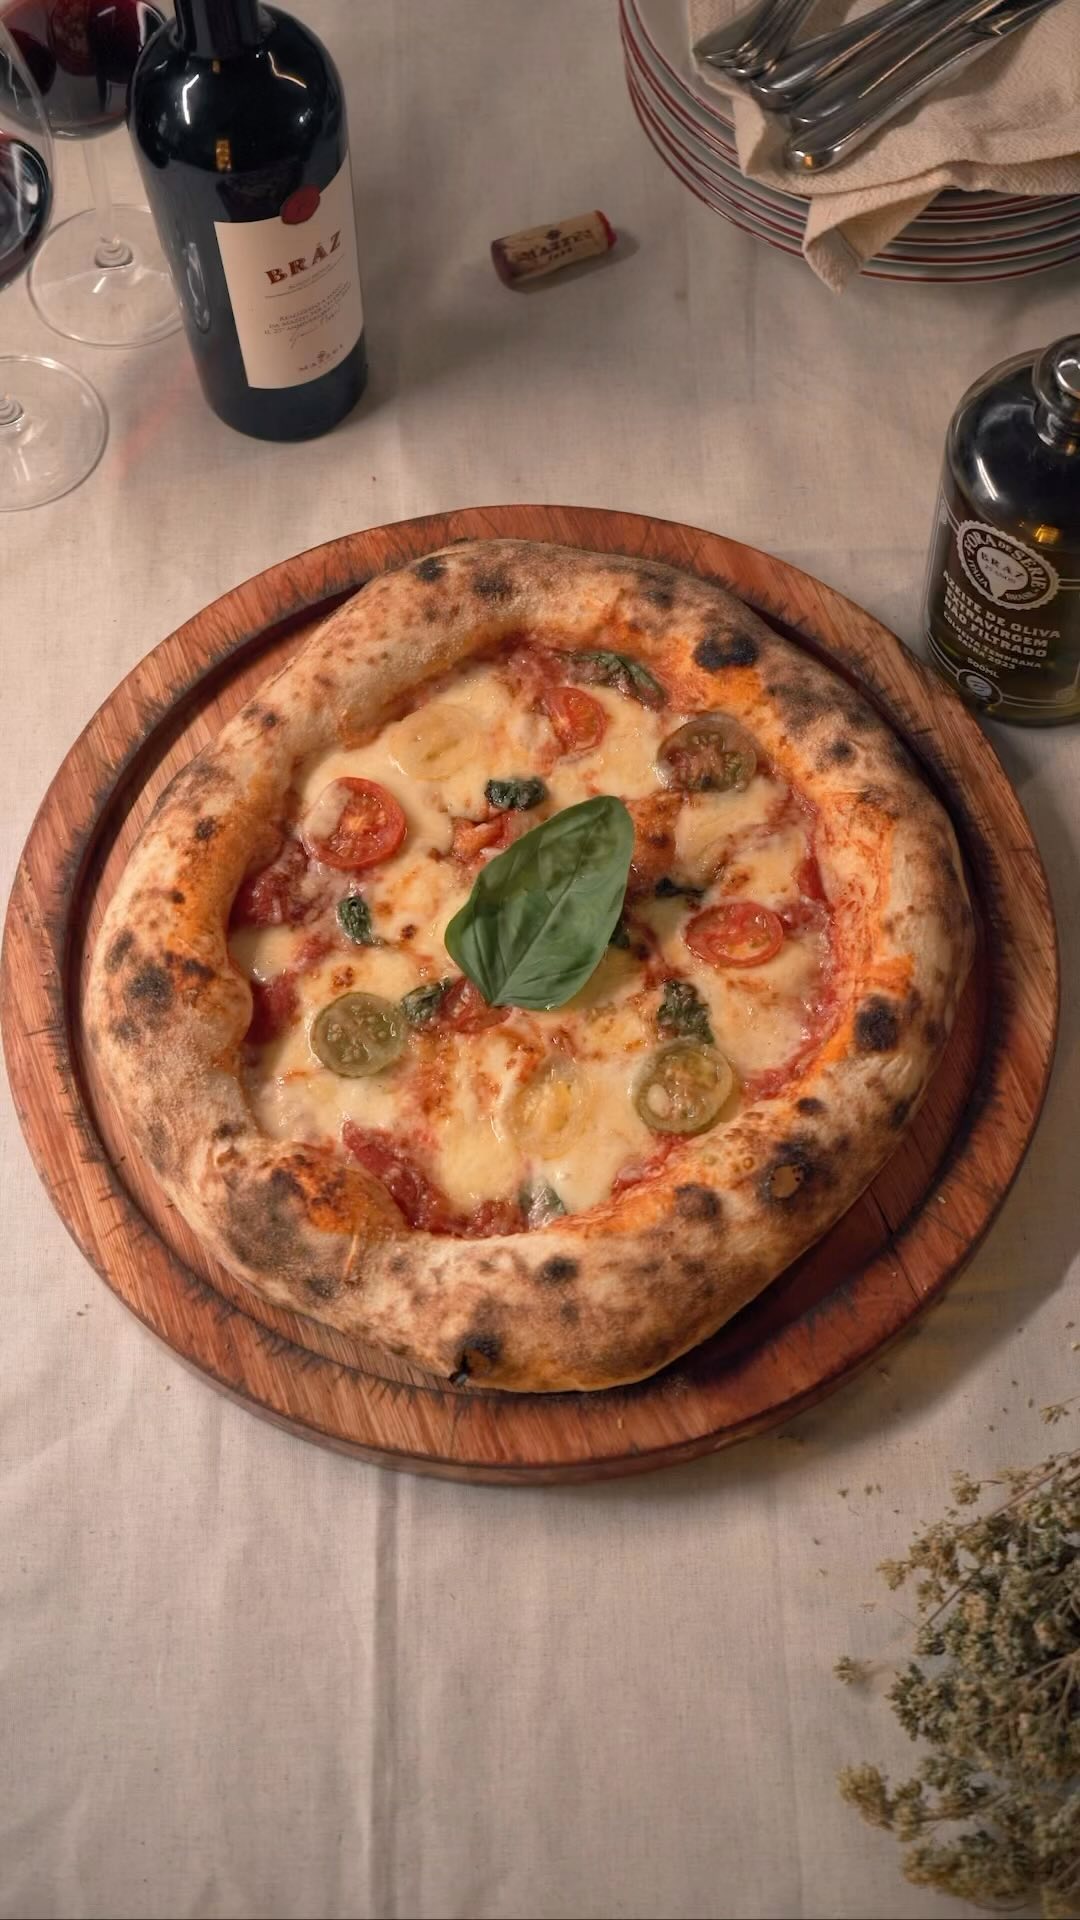 Bráz e 1900 estão entre as 50 melhores pizzarias artesanais do